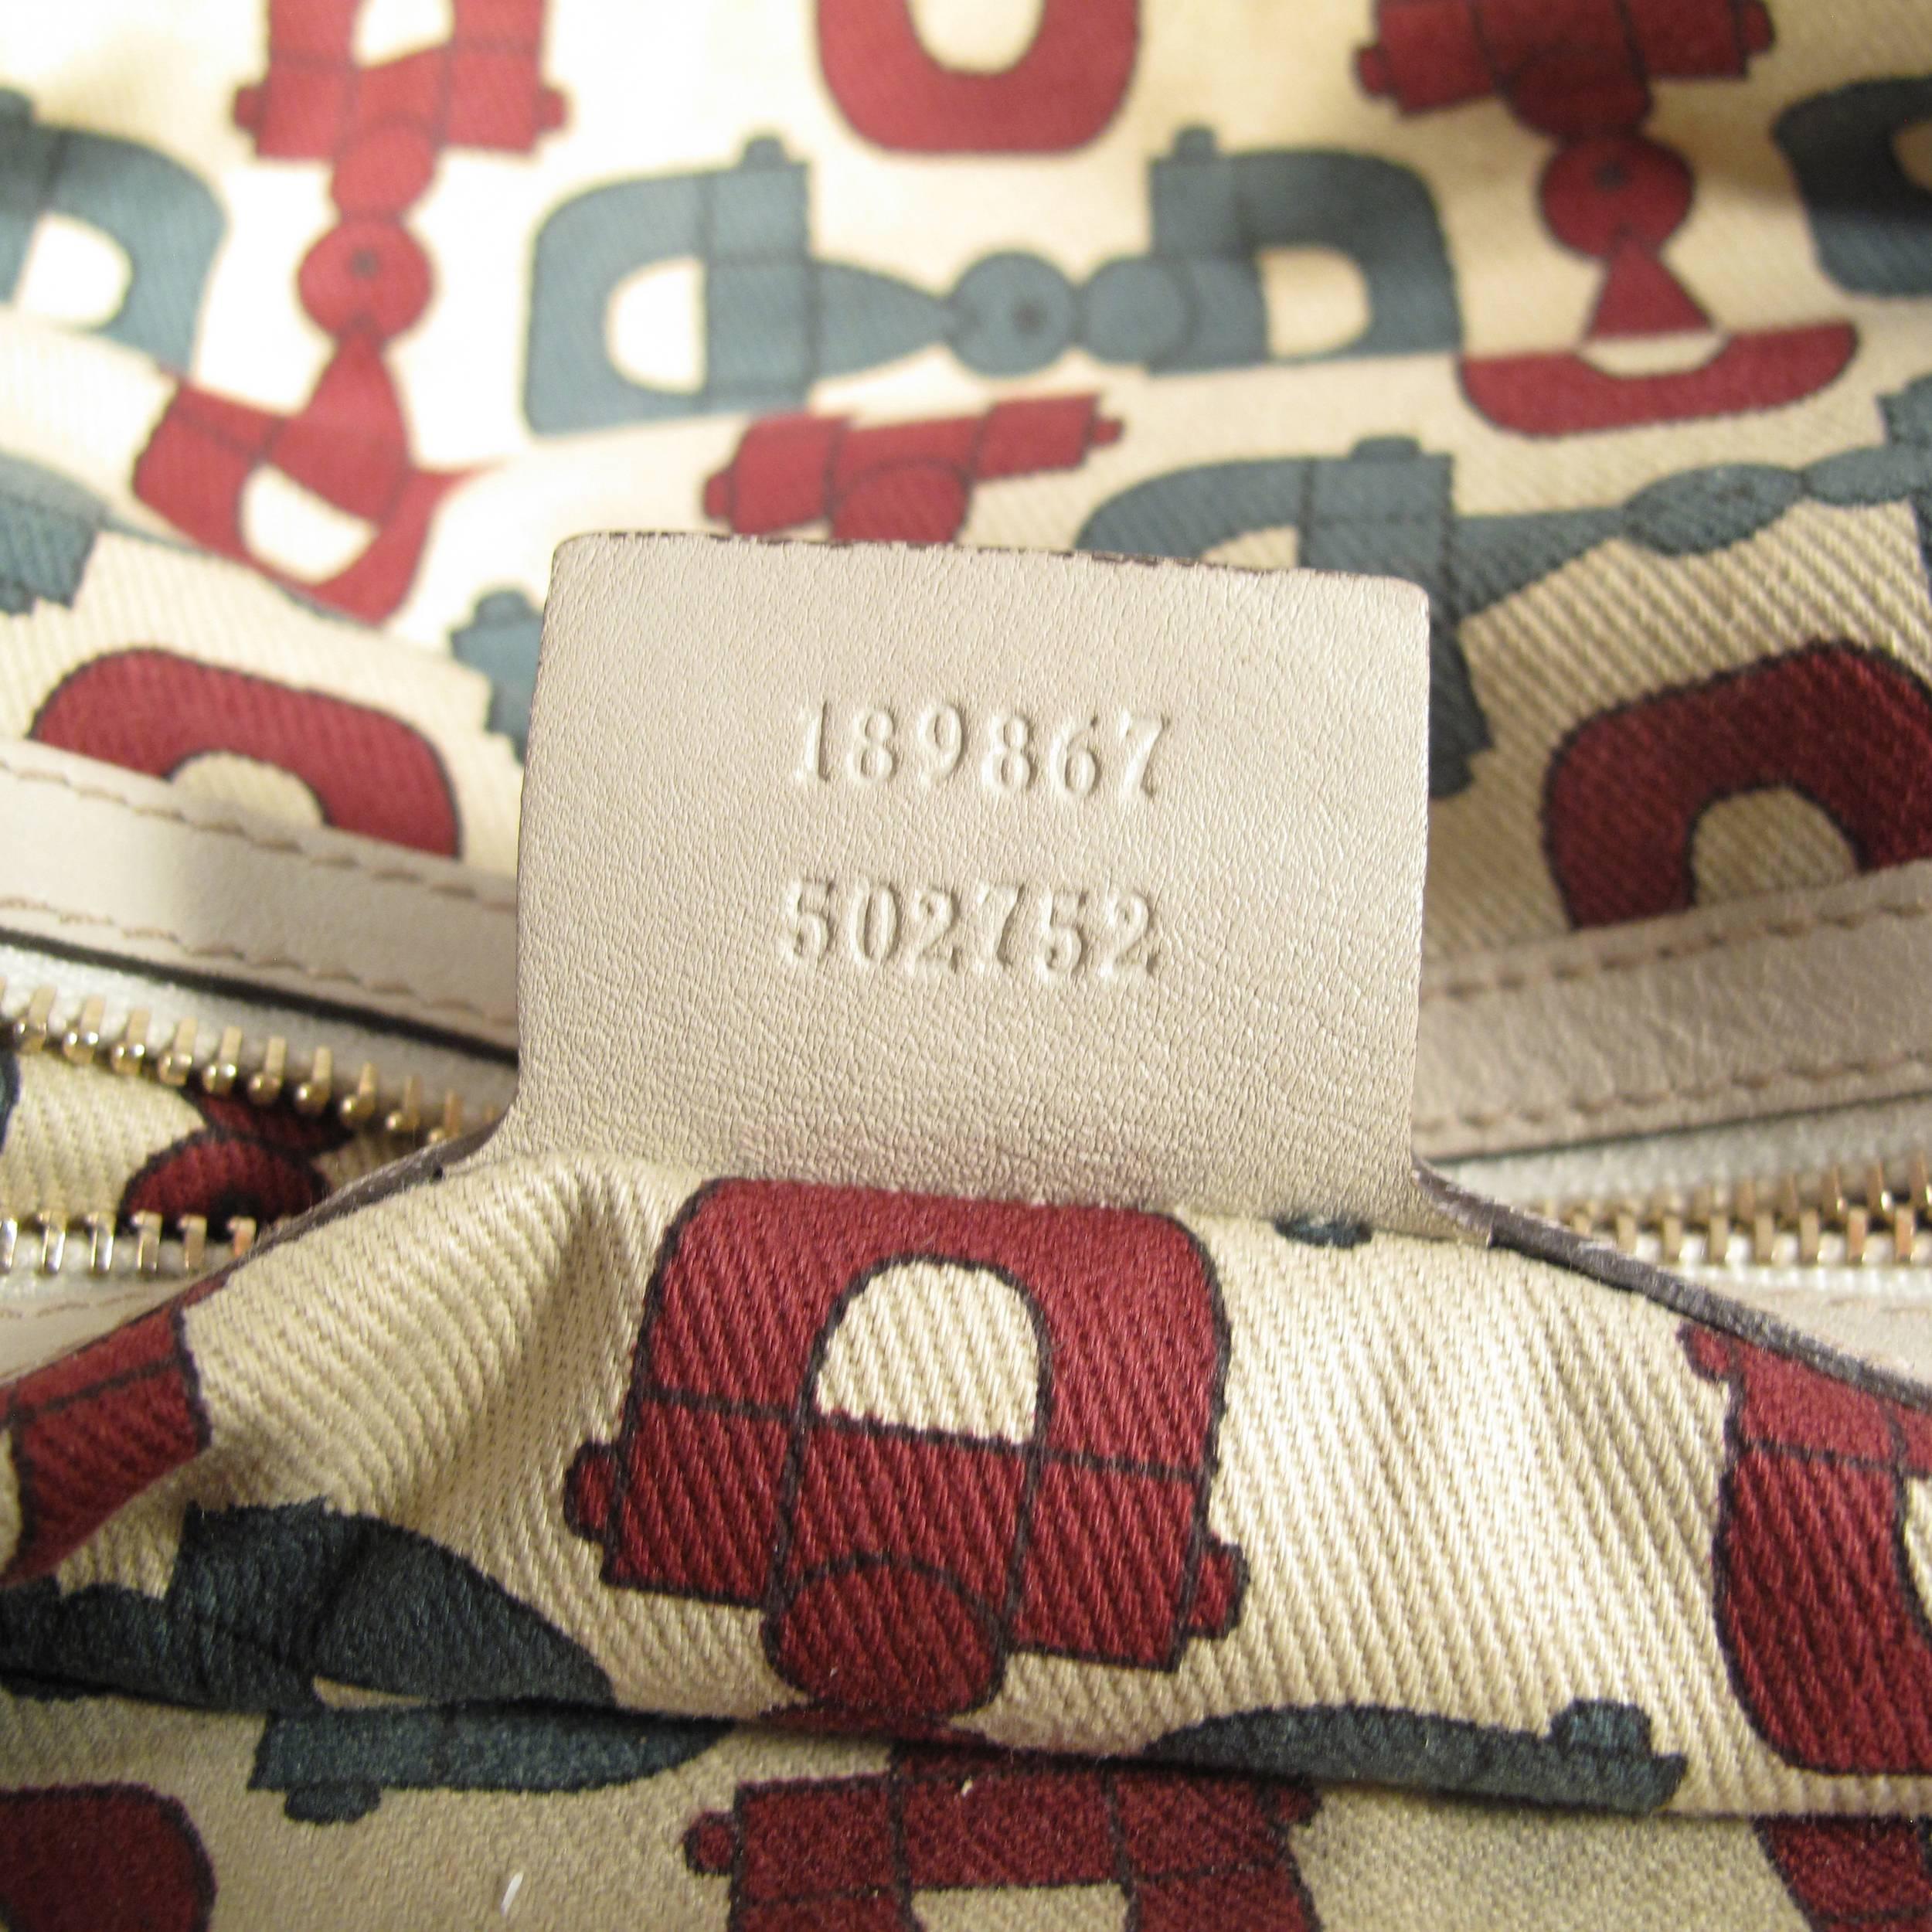 Gucci Bamboo Leather Monogram Shoulder Bag - Tan Beige GG Gold Satchel Handbag 5